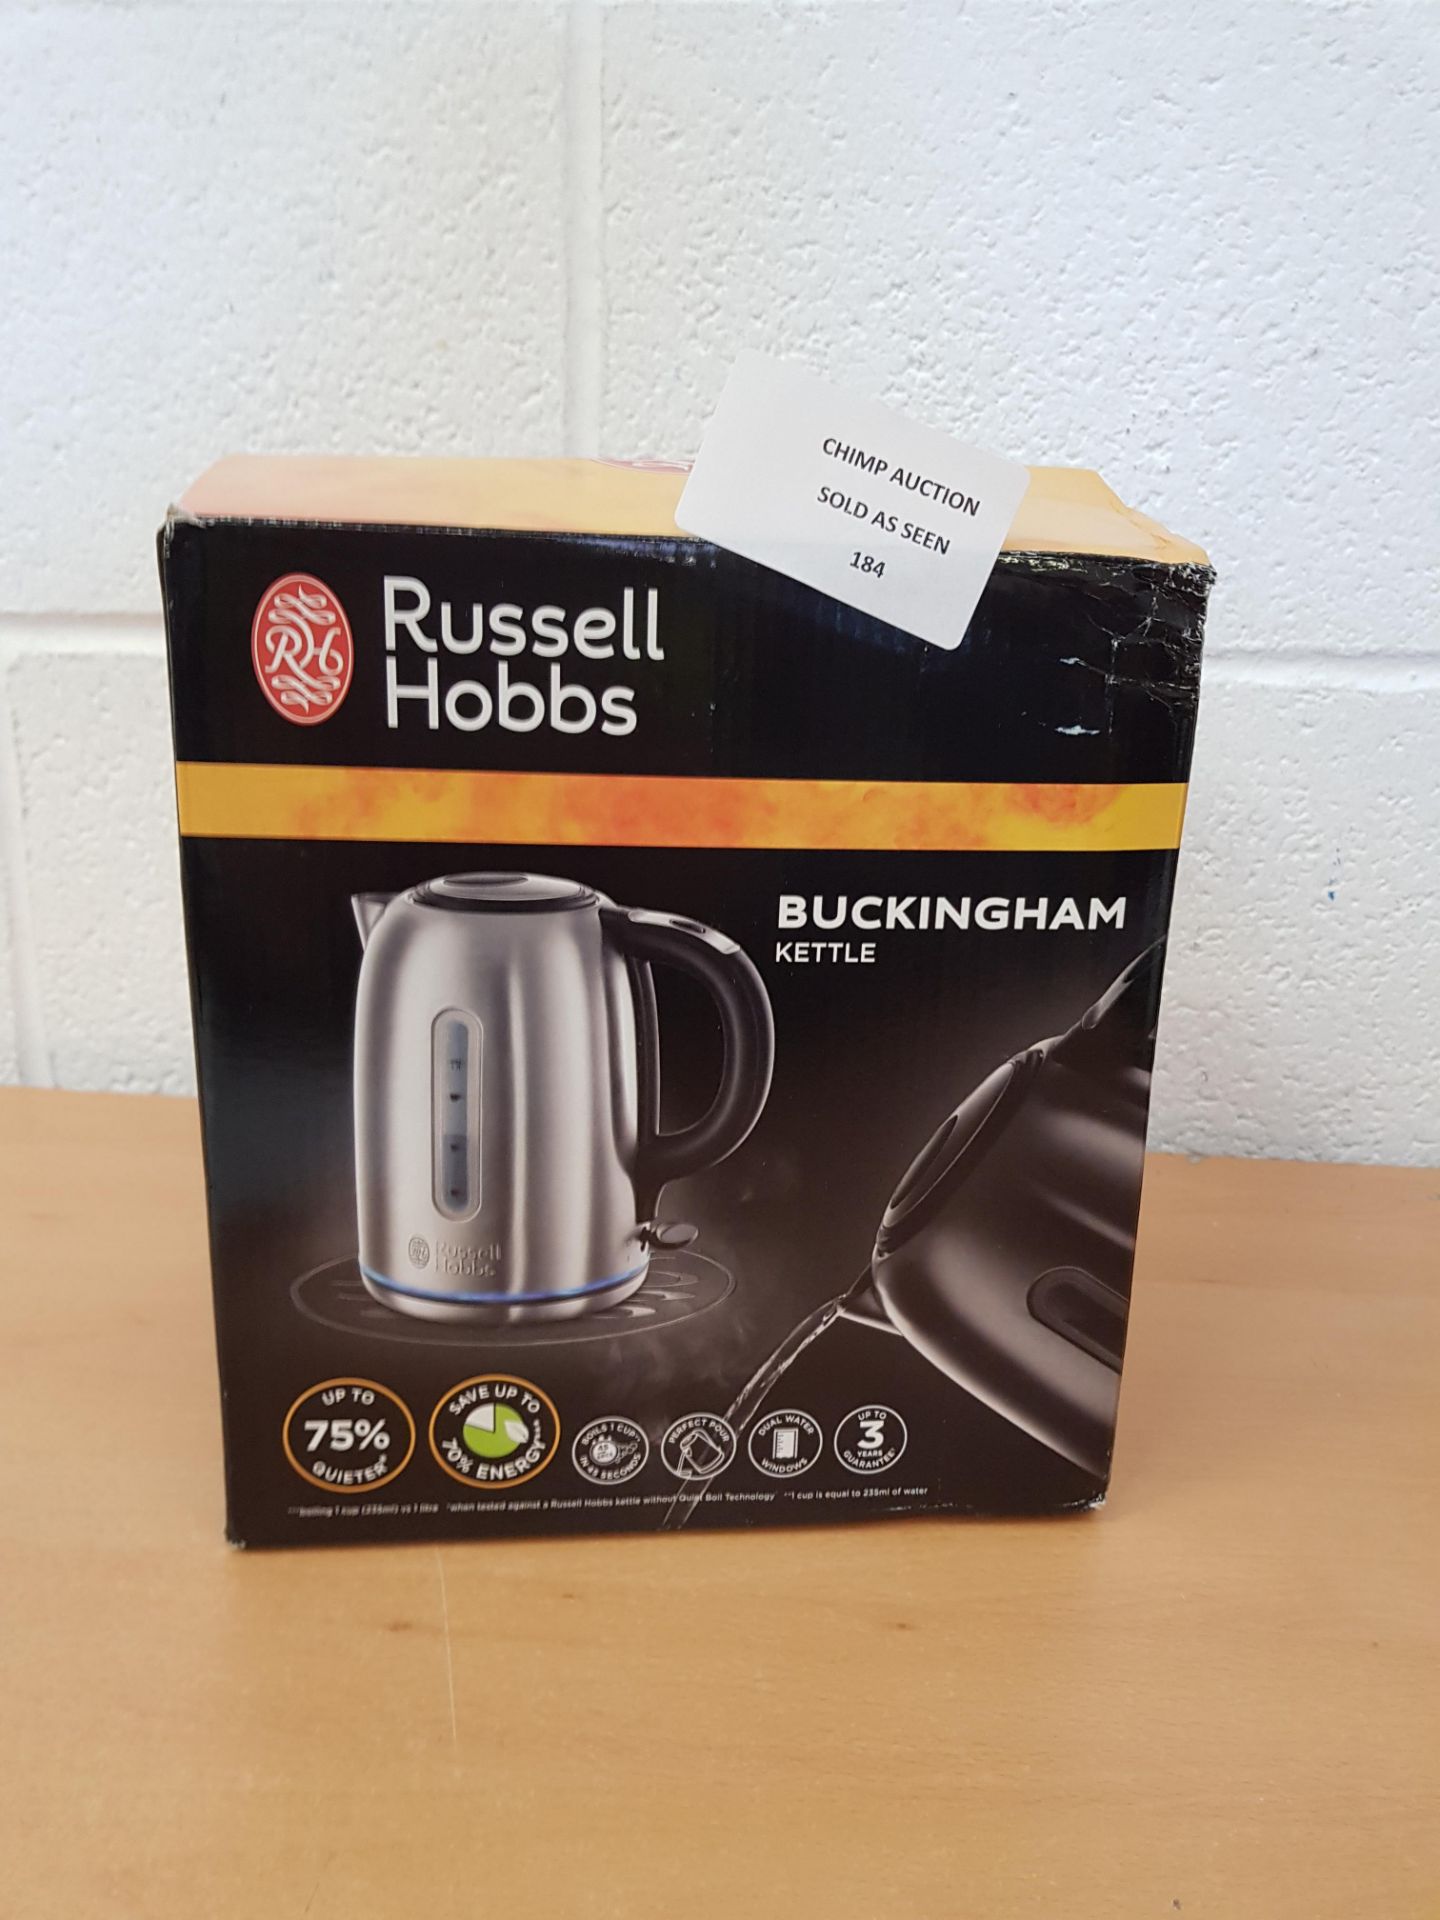 Russell Hobbs Buckingham kettle